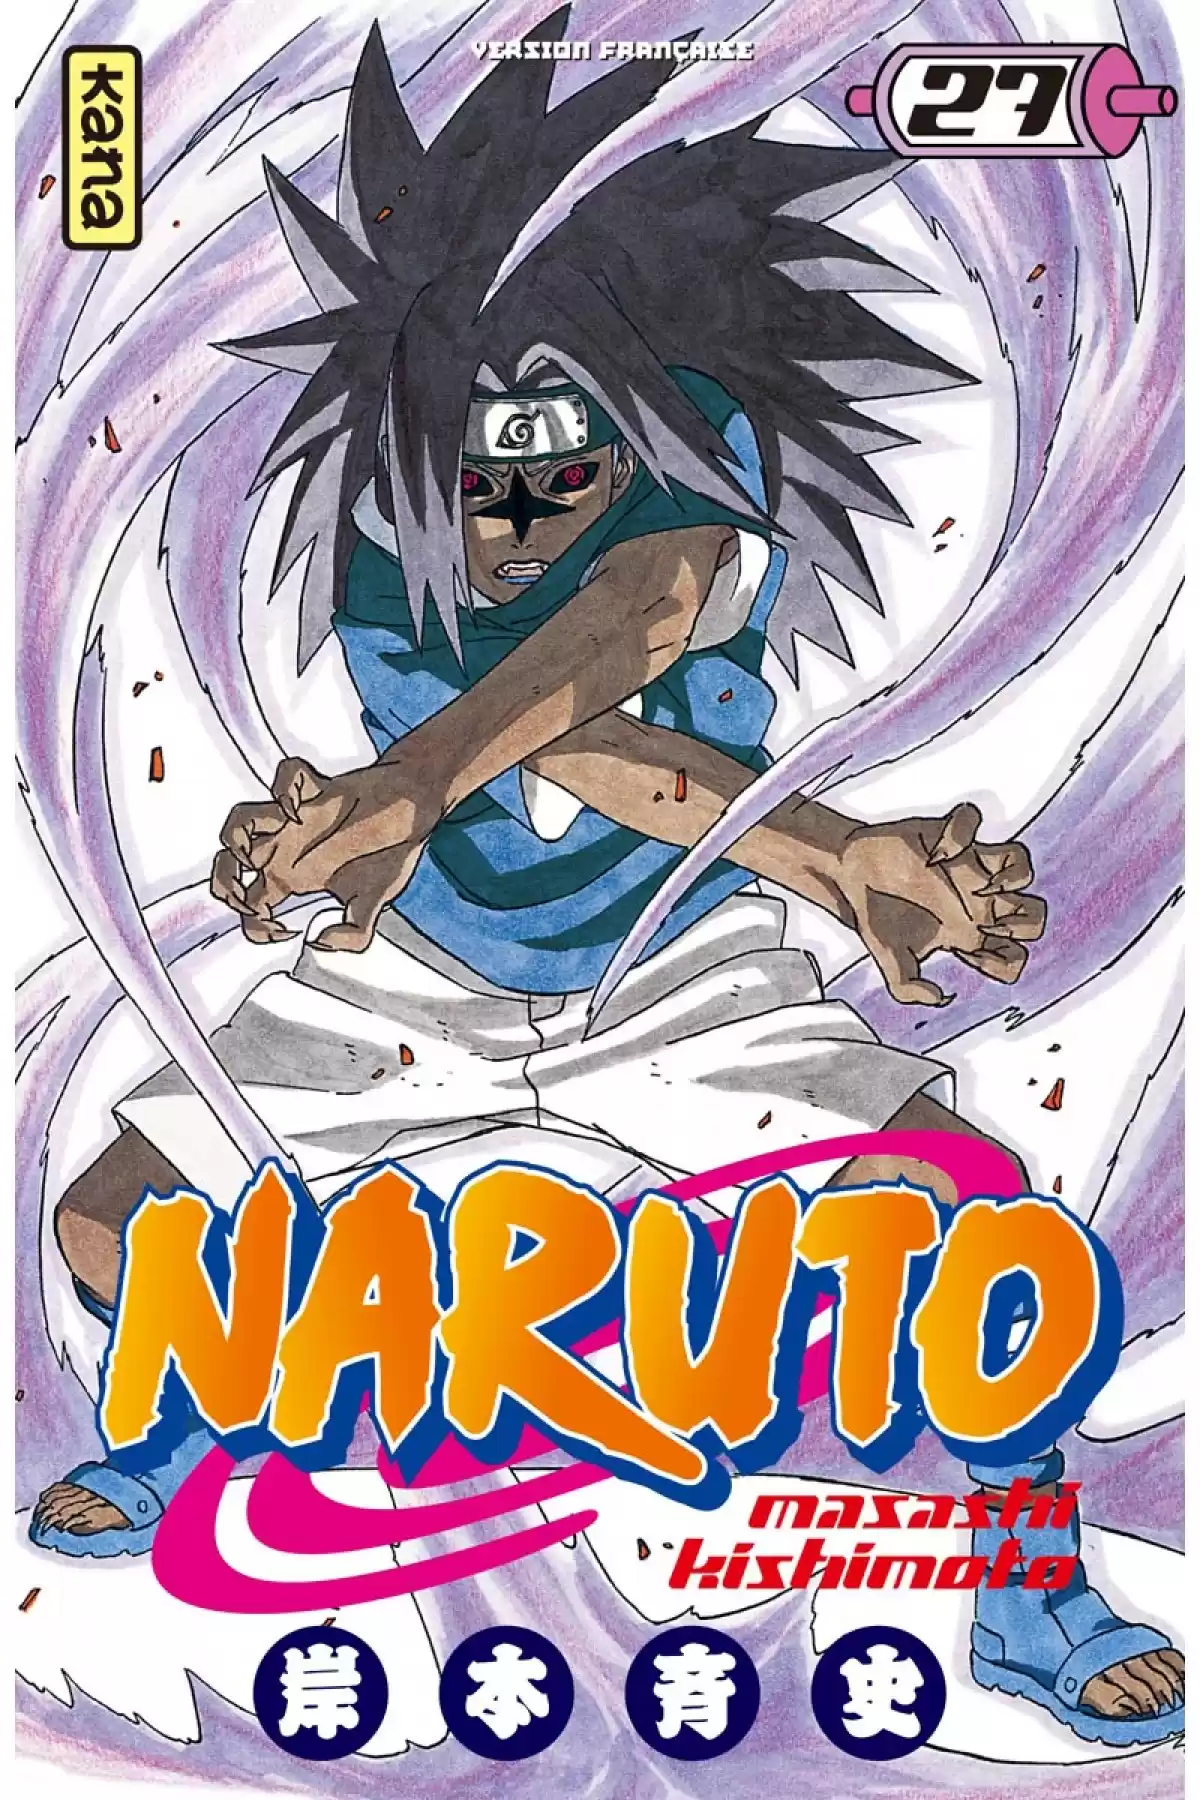 Naruto Volume 27 page 1